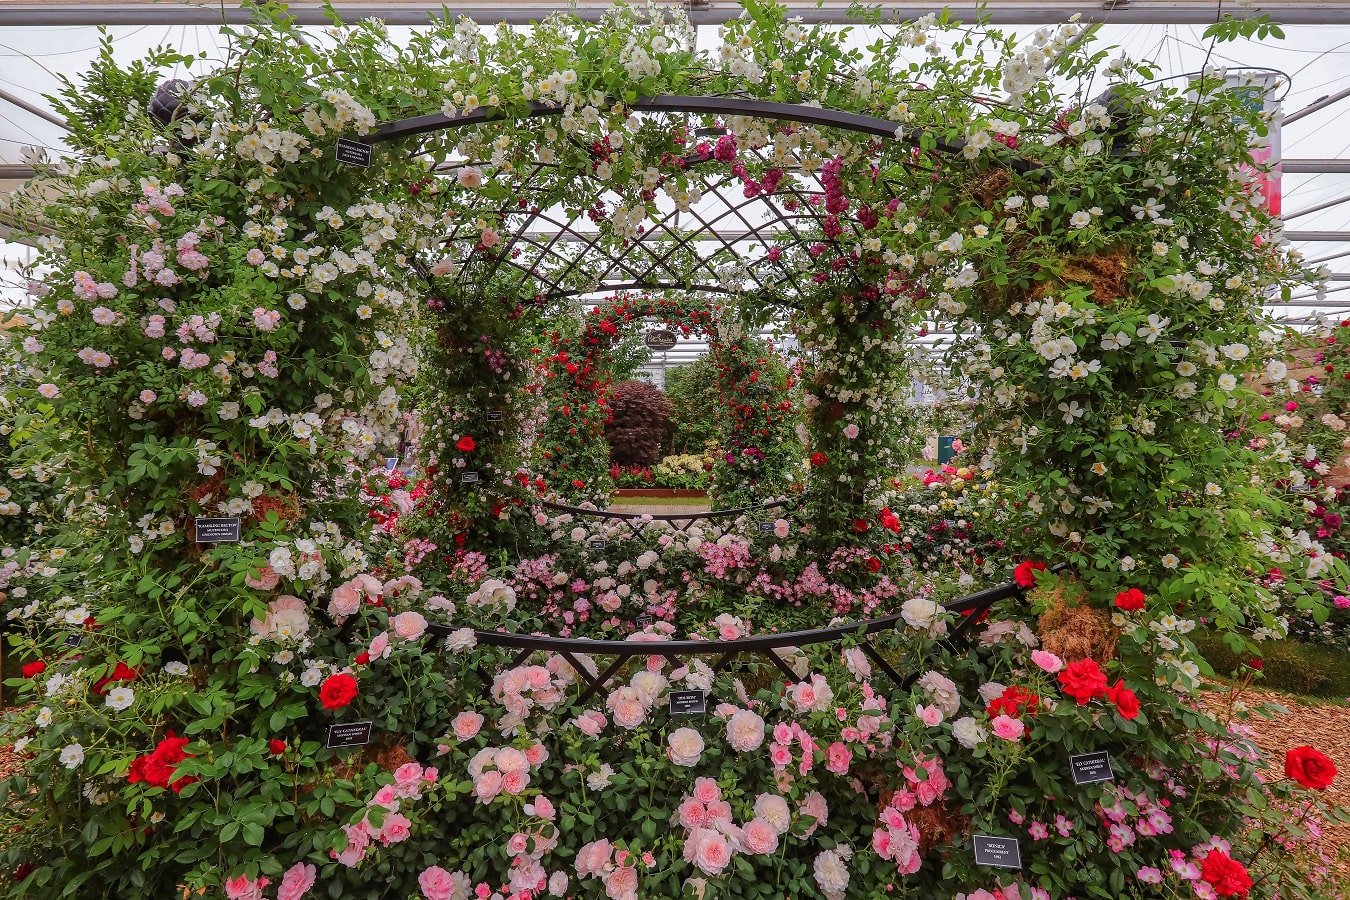 Rosenpavillon 'Buscot Park' von Classic Garden Elements auf der Chelsea Flower Show Stand von Peter Beales Roses